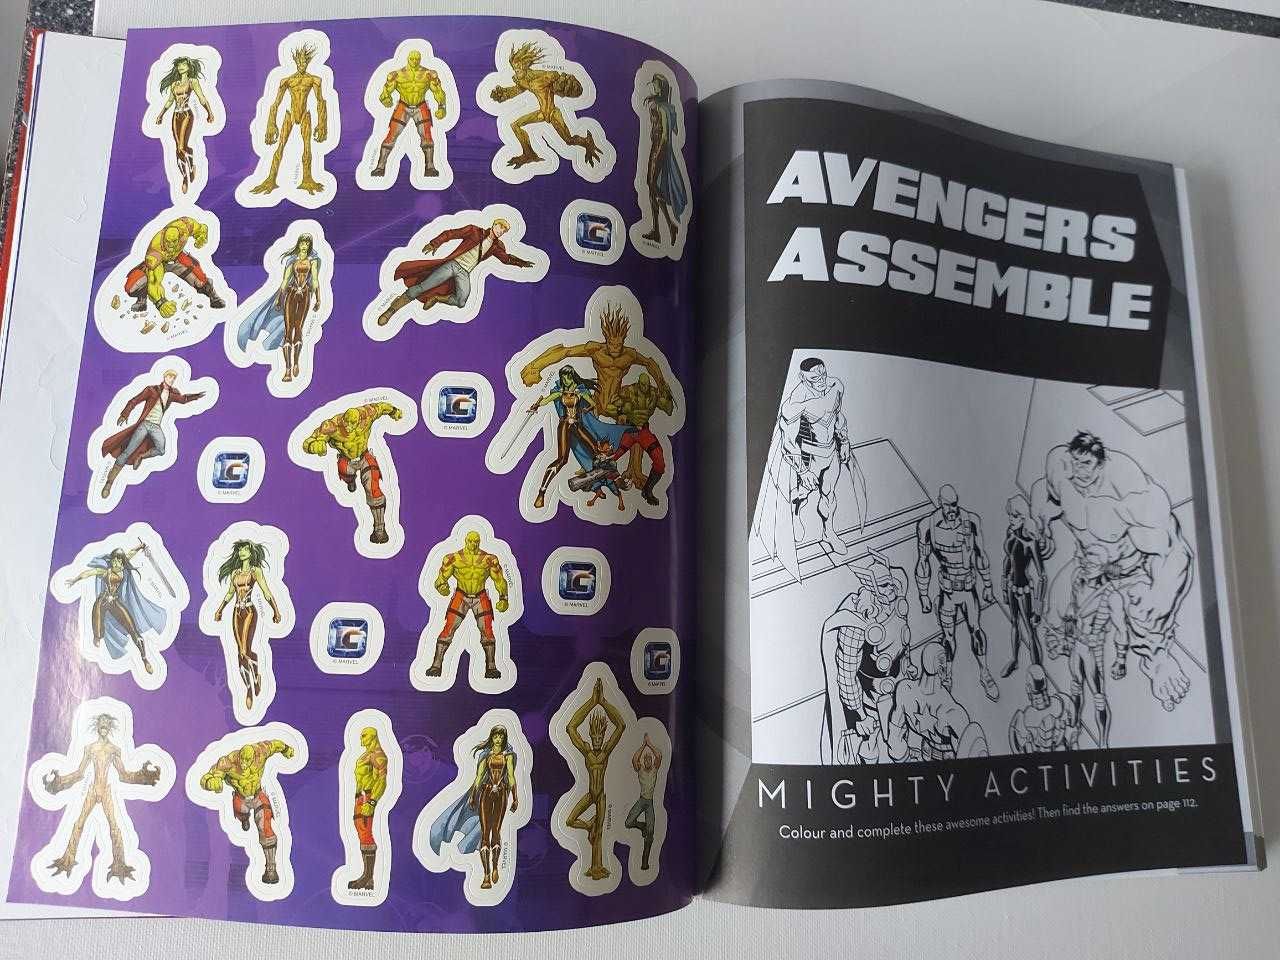 Книга  Marvel collection  ілюстрована з наклейками, англійська мова